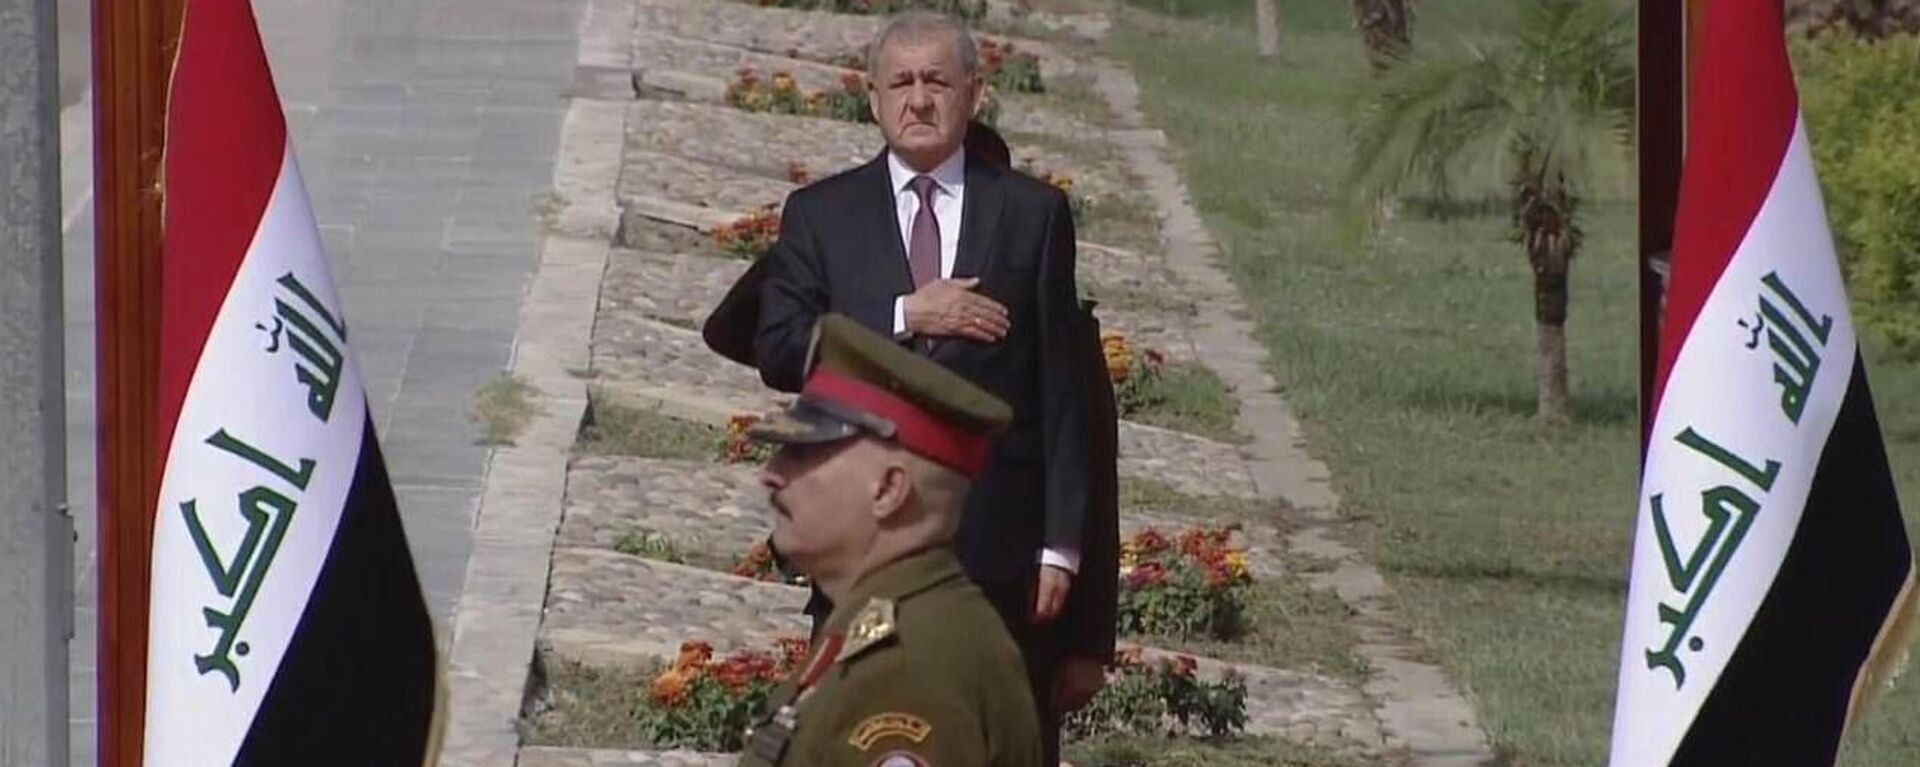 Irak Cumhurbaşkanı Abdüllatif Reşit, Bağdat'taki Cumhurbaşkanlığı Sarayı'nda yemin ederek görevine resmen başladı. - Sputnik Türkiye, 1920, 17.10.2022